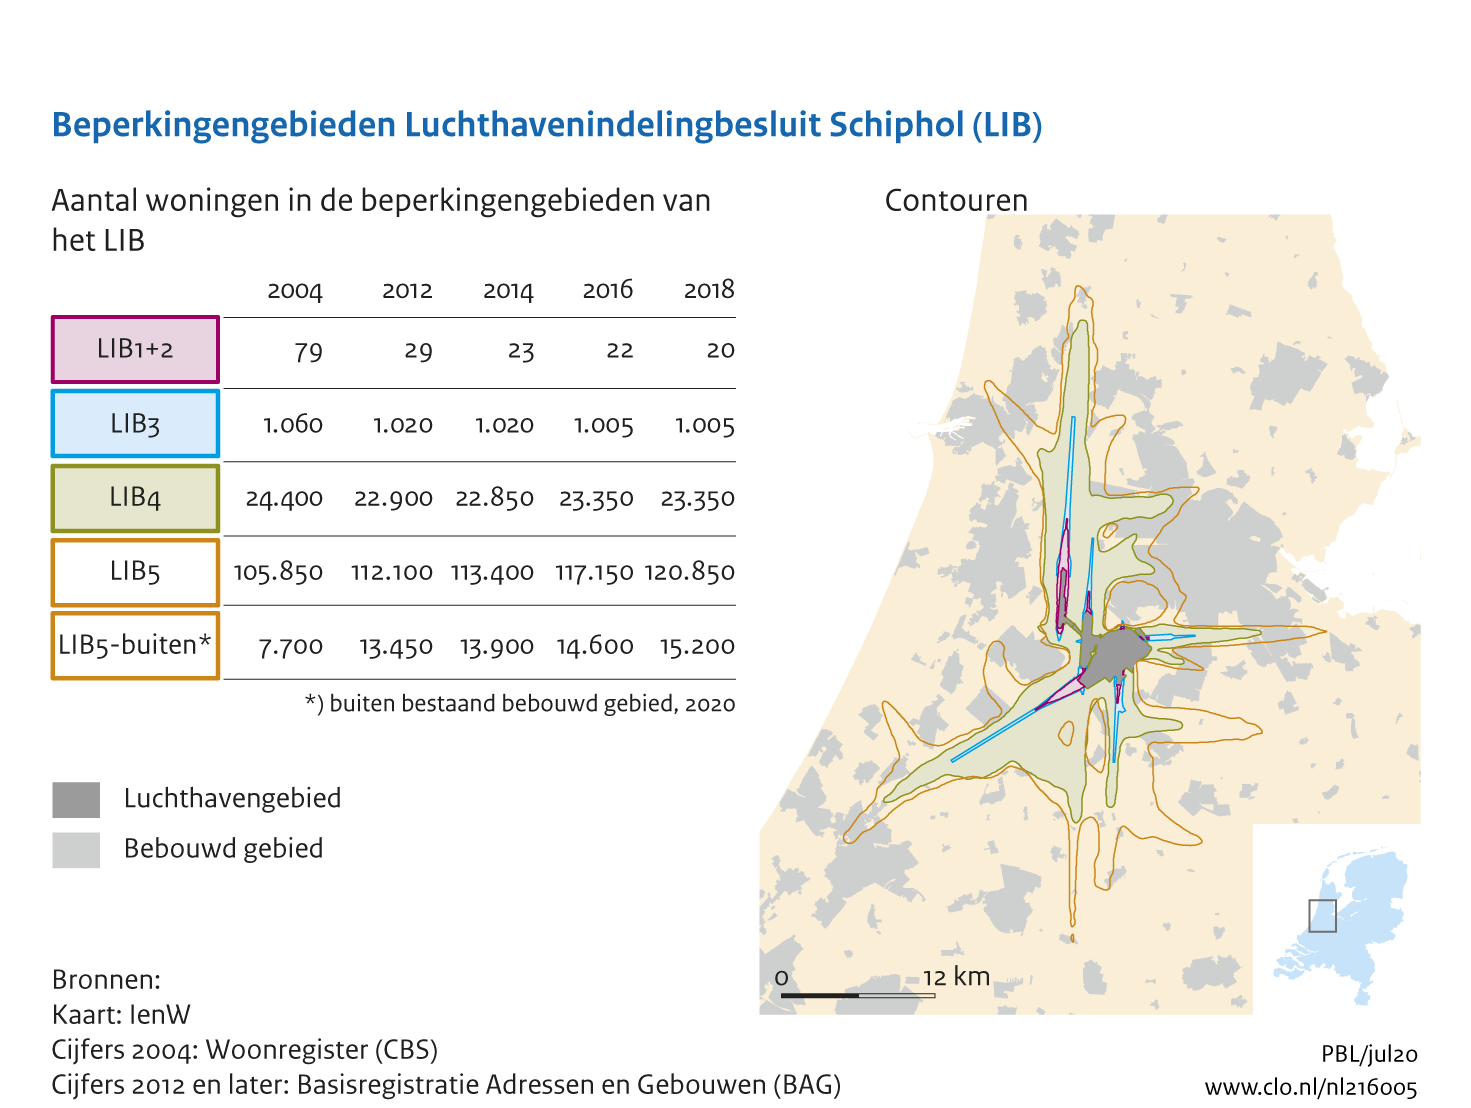 Figuur Woningen binnen beperkingengebieden van het Luchtvaartindelingbesluit Schiphol. In de rest van de tekst wordt deze figuur uitgebreider uitgelegd.